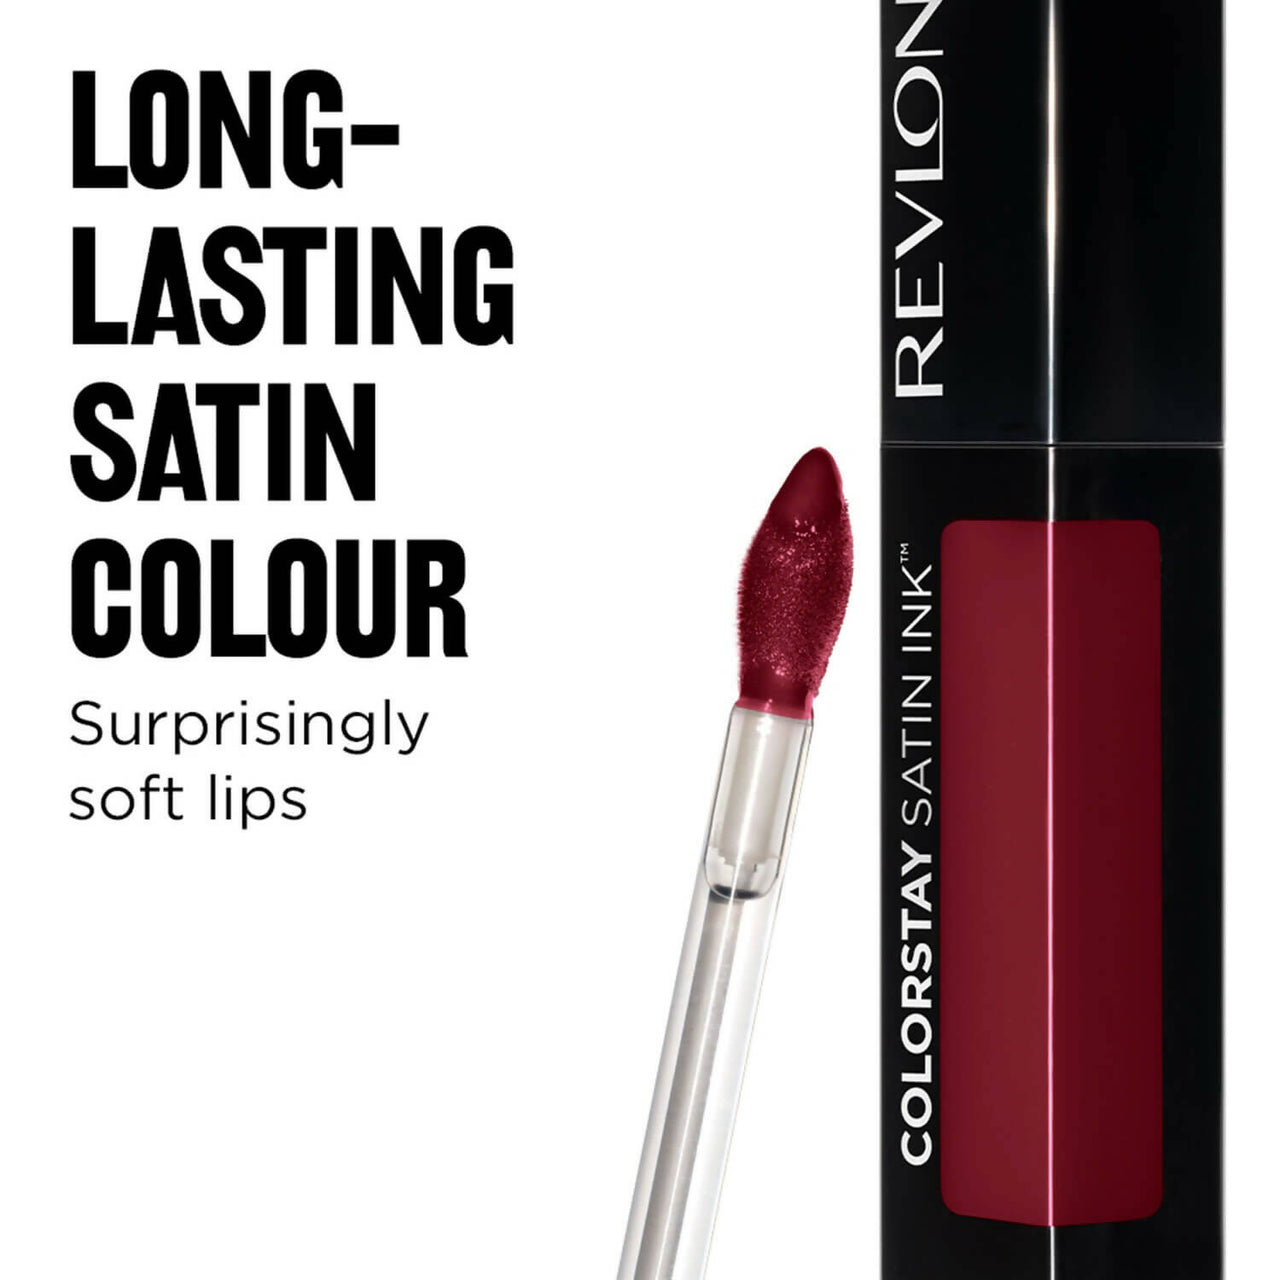 Revlon Colorstay Satin Ink Liquid Lip Color - Partner In Wine - Distacart